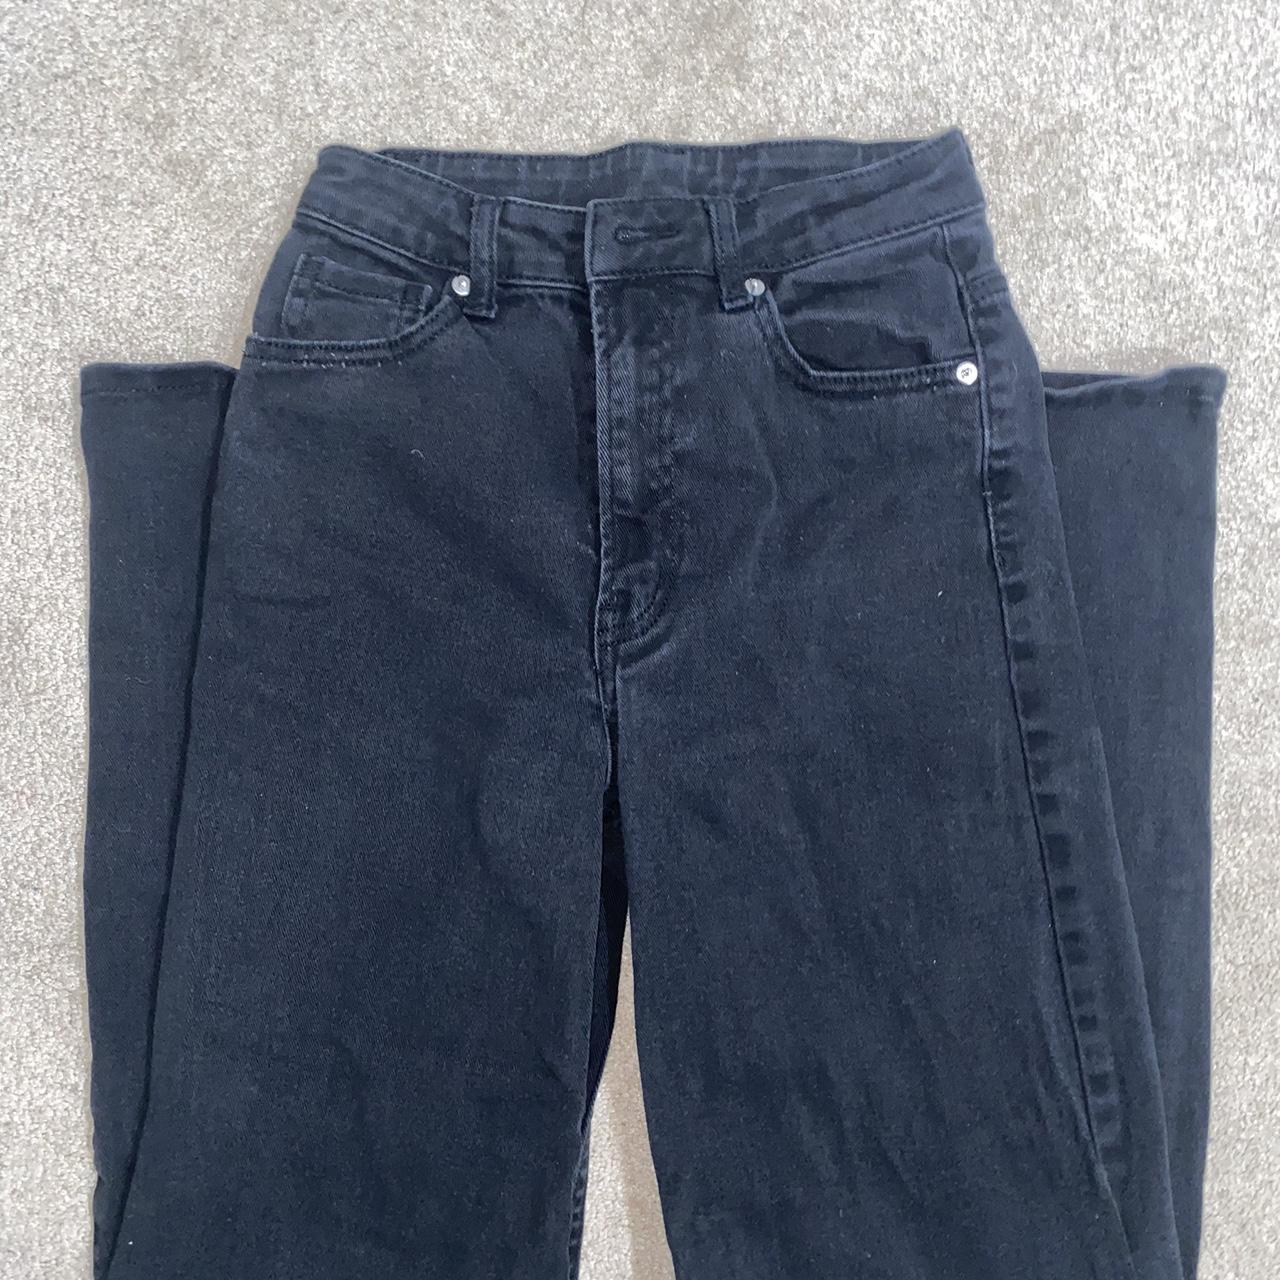 Black Wide Leg Jeans (size 2) - PERFECT CONDITION -... - Depop